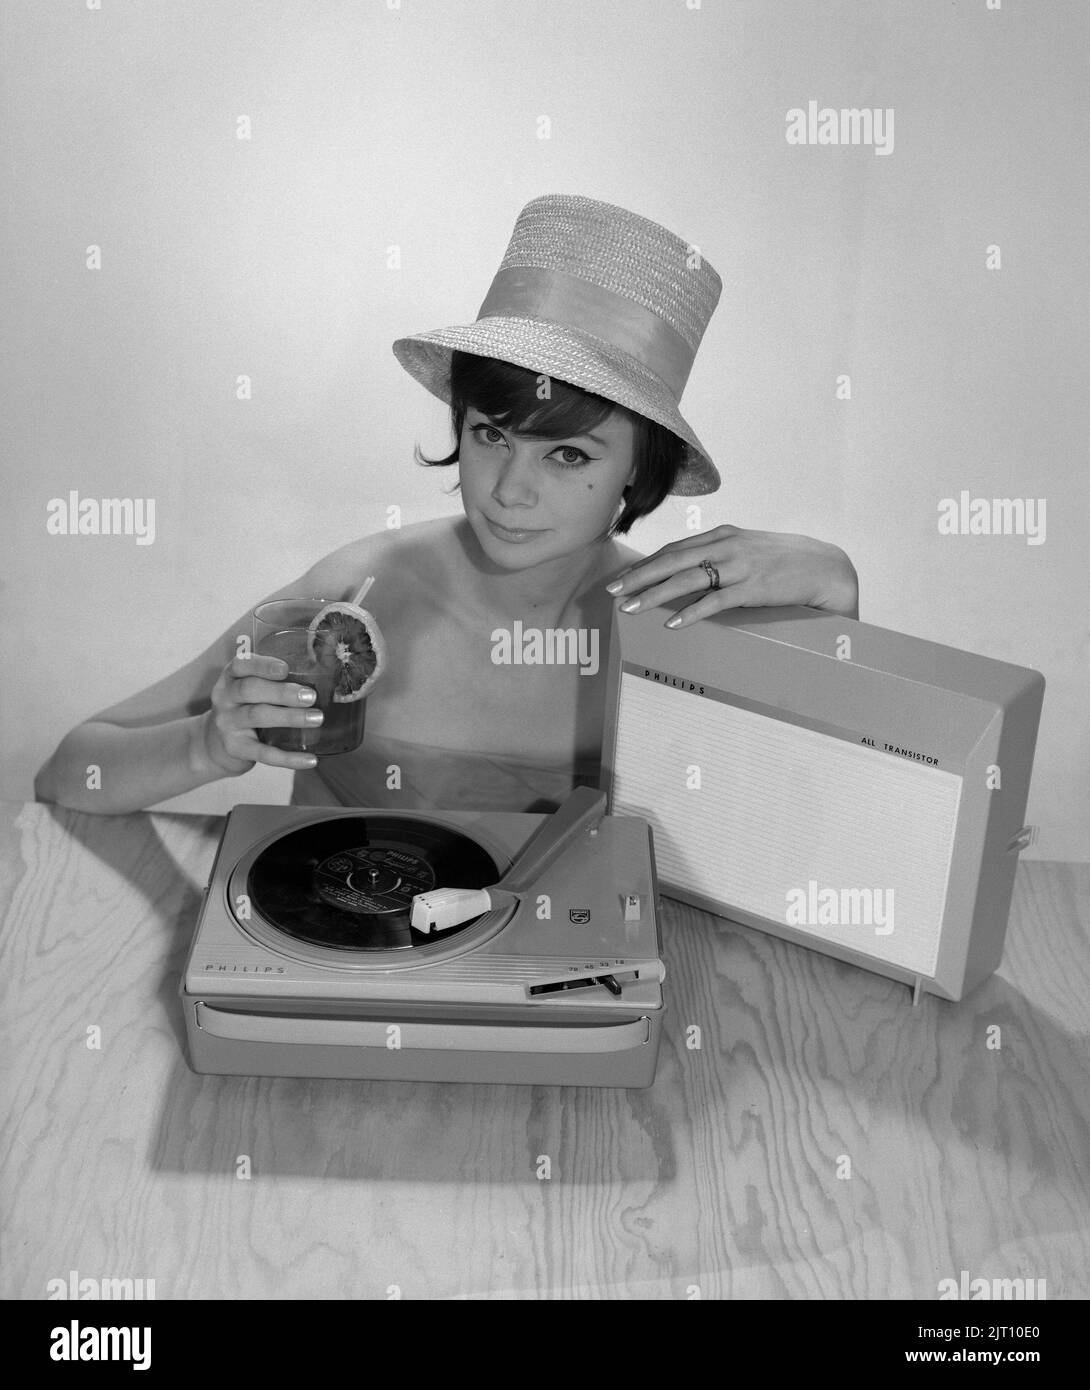 1960s Lifestyle. Eine junge Frau mit einem Philips Radio und einem Grammophon, wie es im Sommer aussehen könnte. Der Sommerhut und das kühle Trinkglas sind im Bild, um das richtige Sommergefühl zu bekommen. Schweden 1960s Foto Kristoffersson Ref 374A Stockfoto